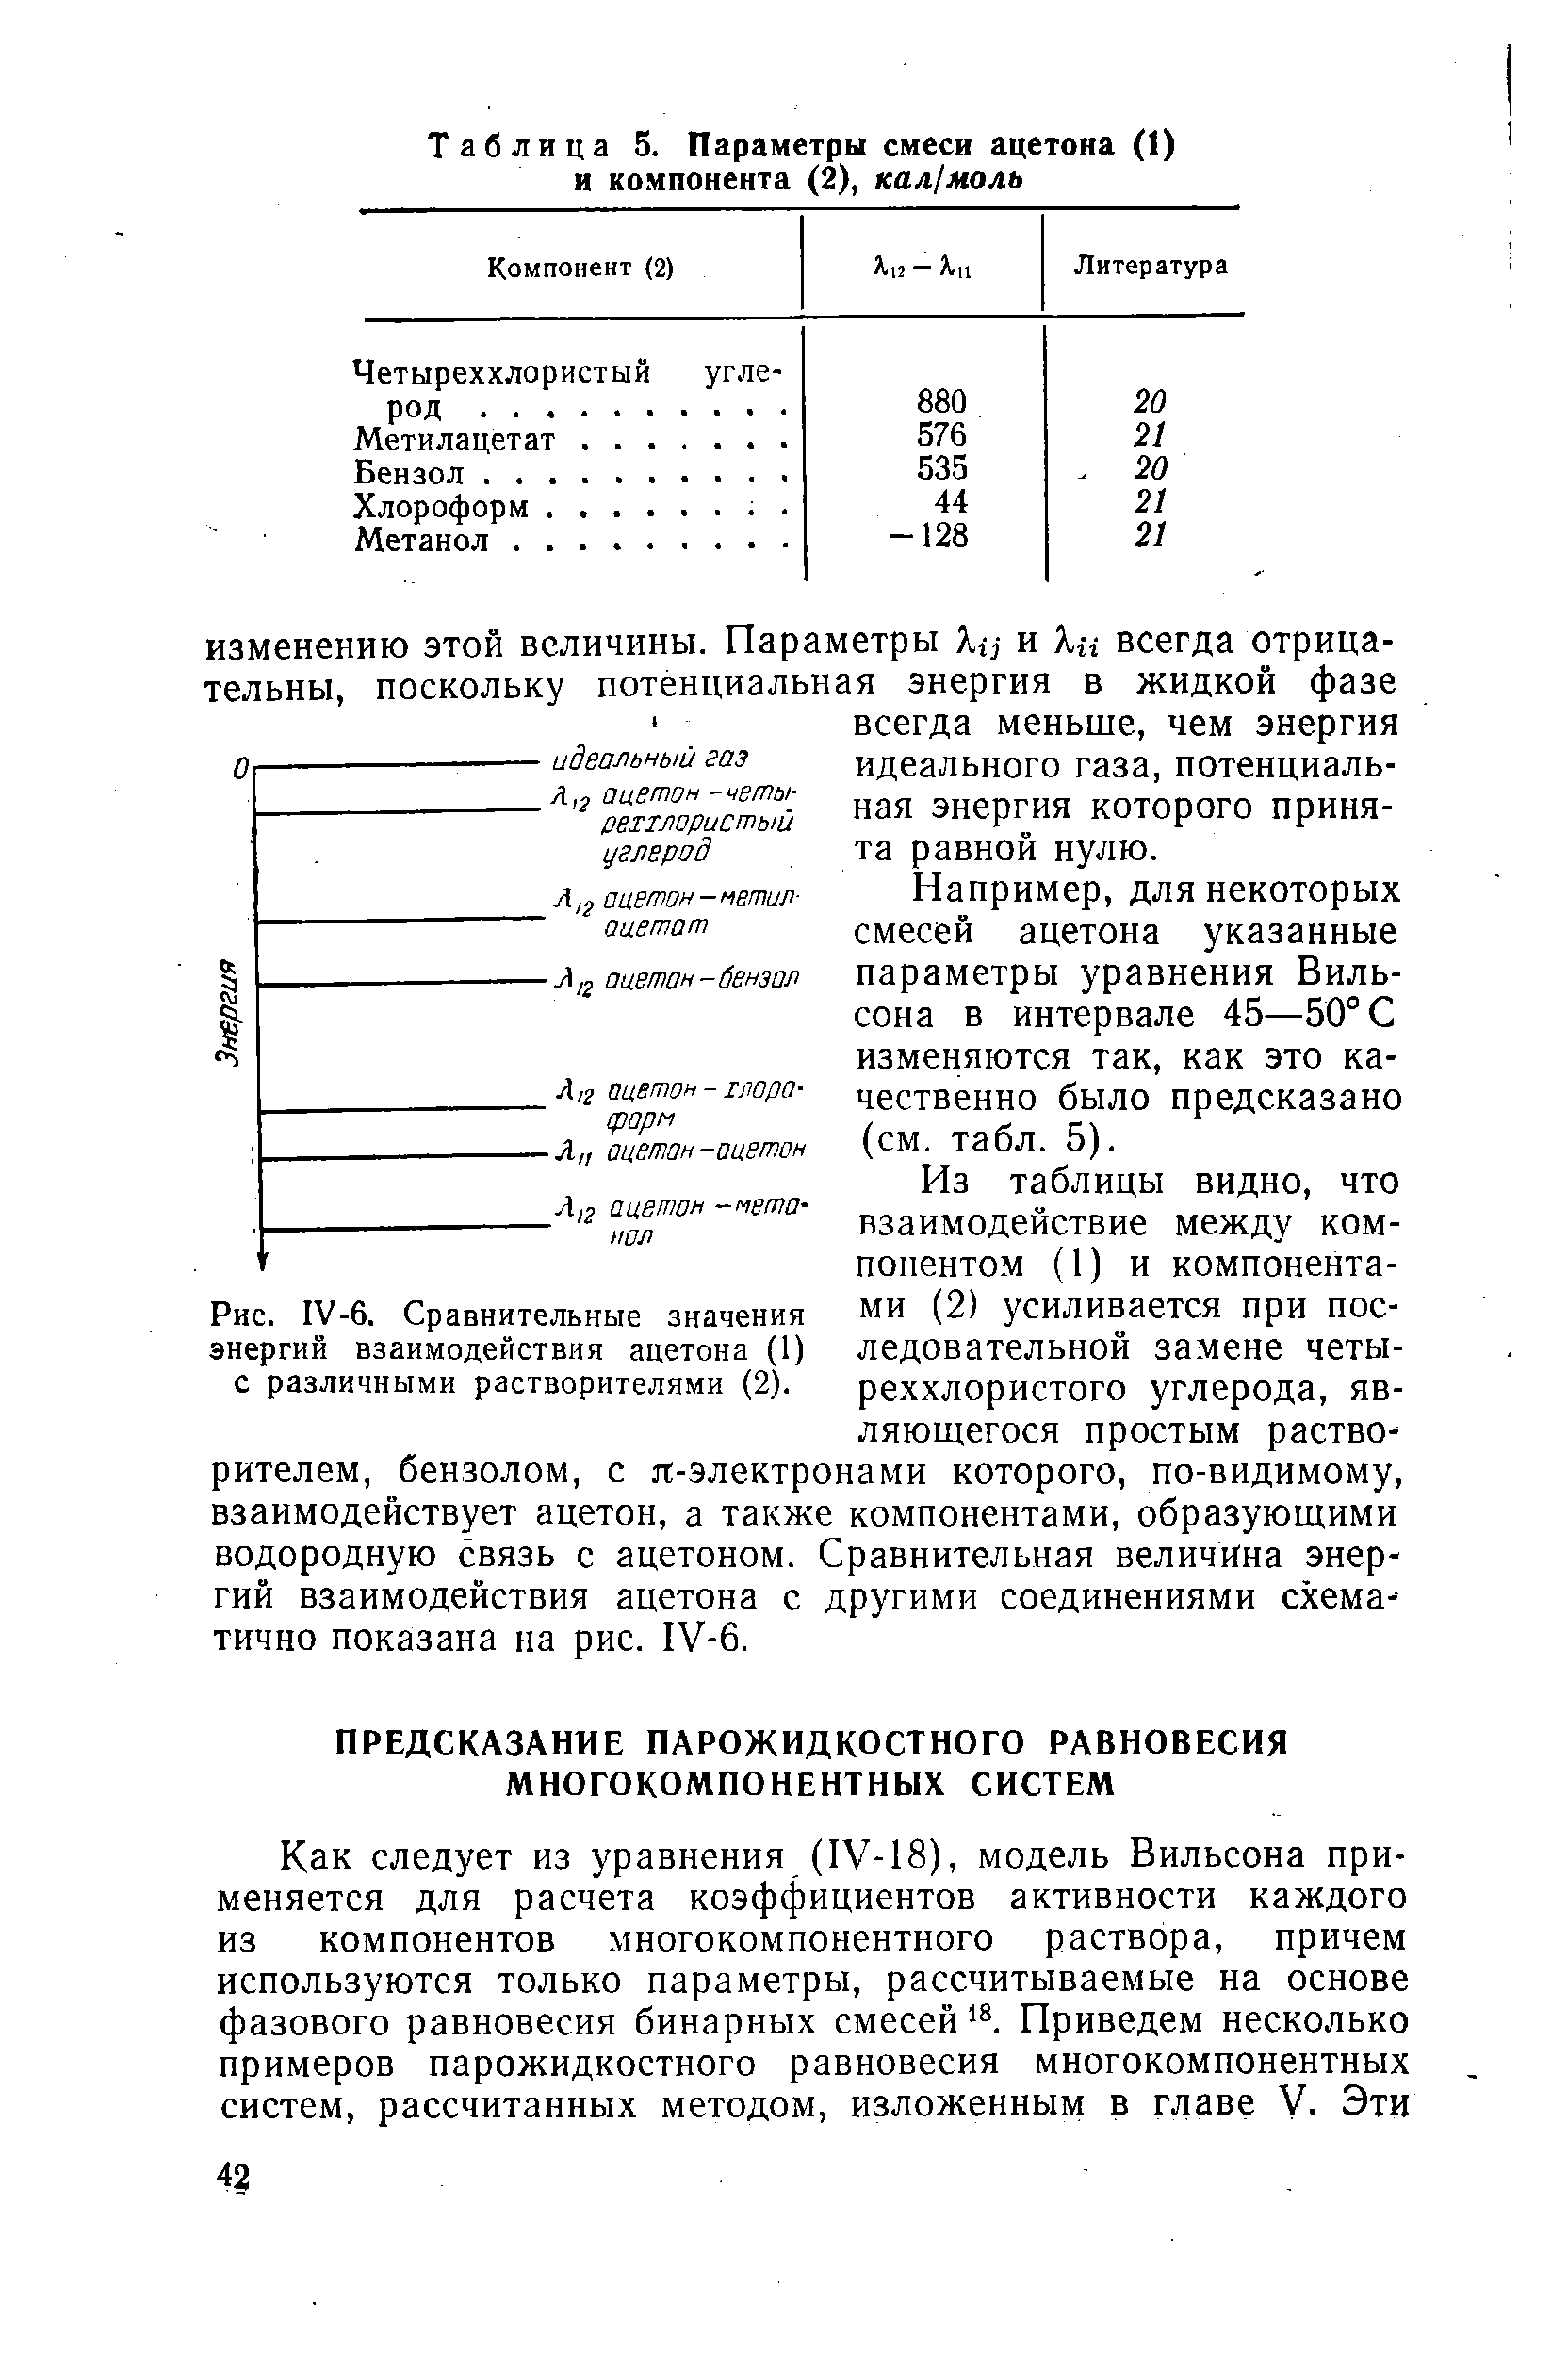 Папример, для некоторых смесей ацетона указанные параметры уравнения Вильсона в интервале 45—50°С изменяются так, как это качественно было предсказано (см. табл. 5).